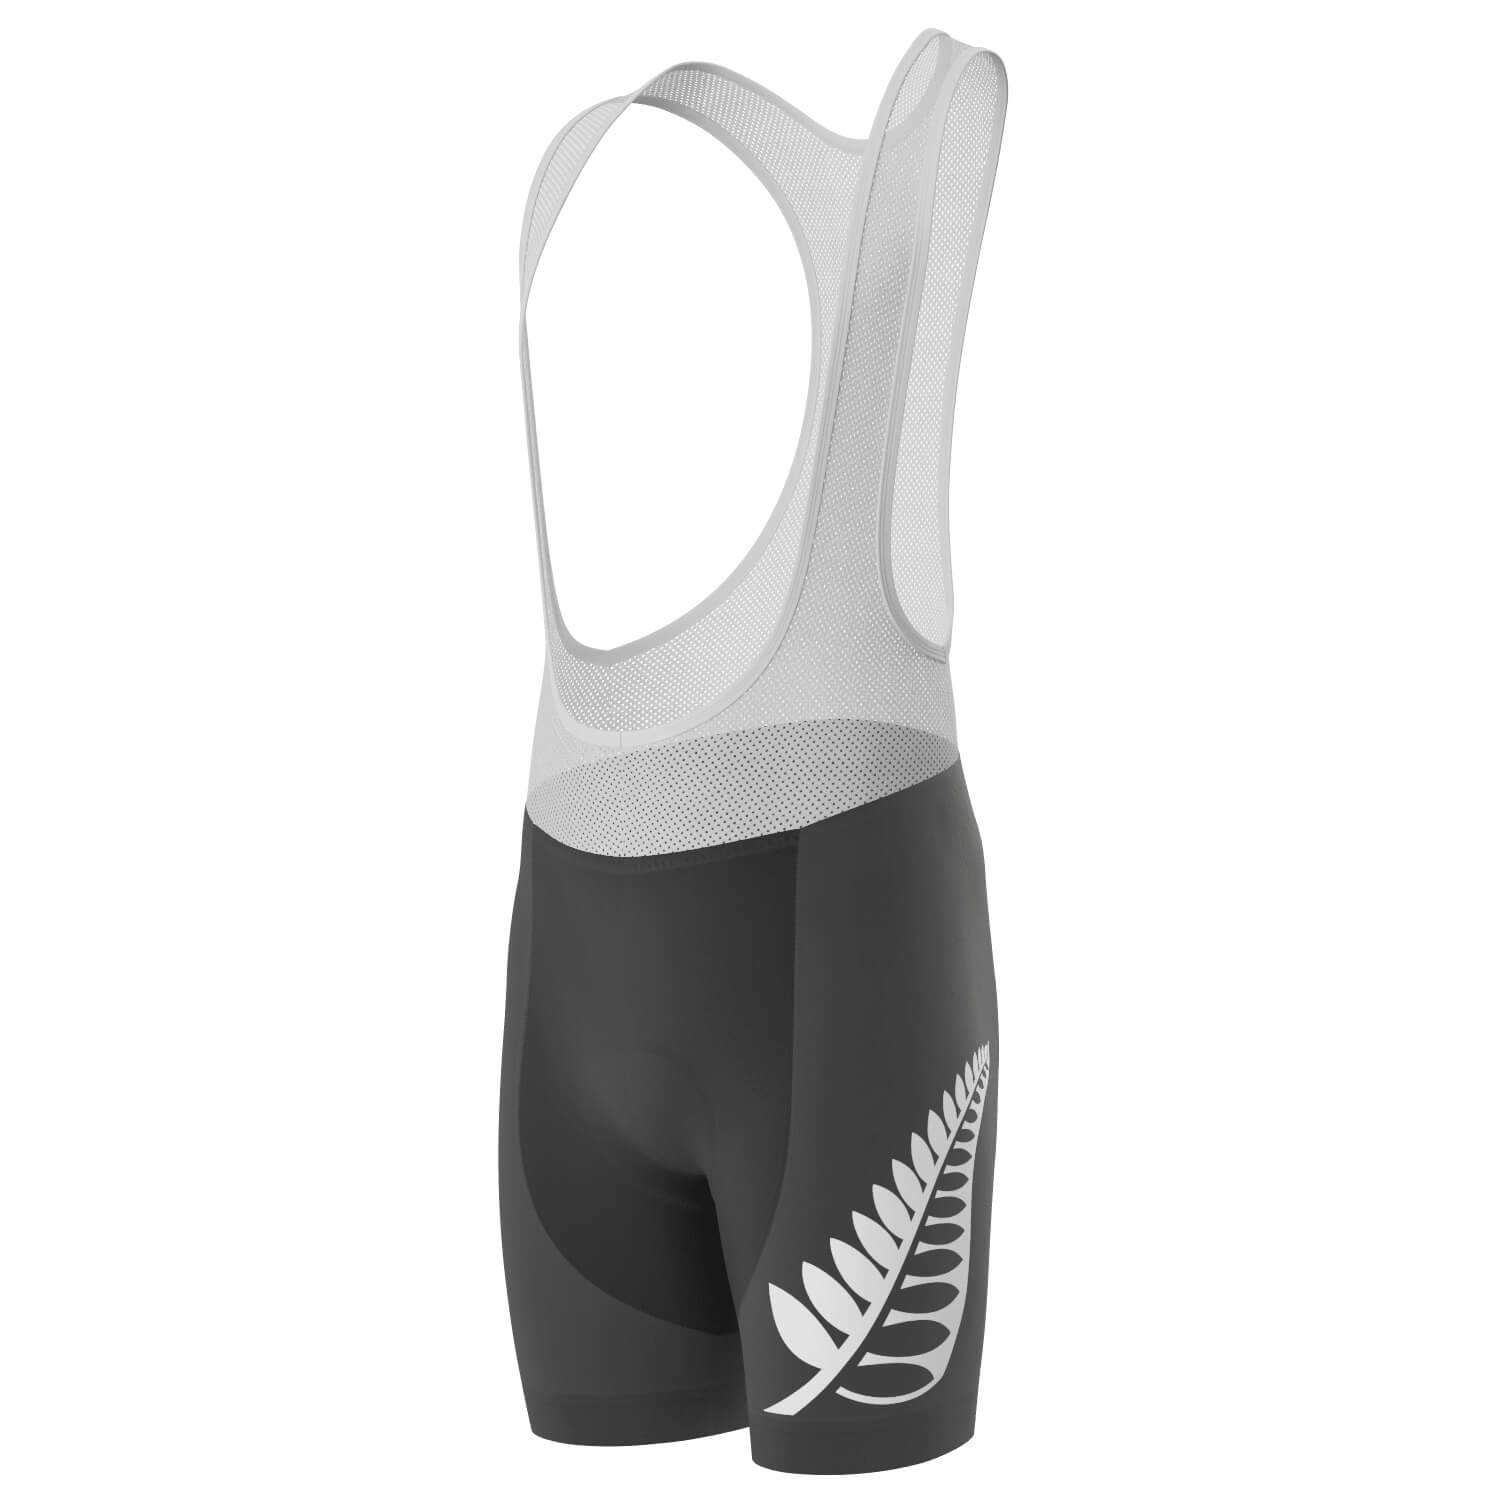 Men's New Zealand Silver Fern Gel Padded Cycling Bib